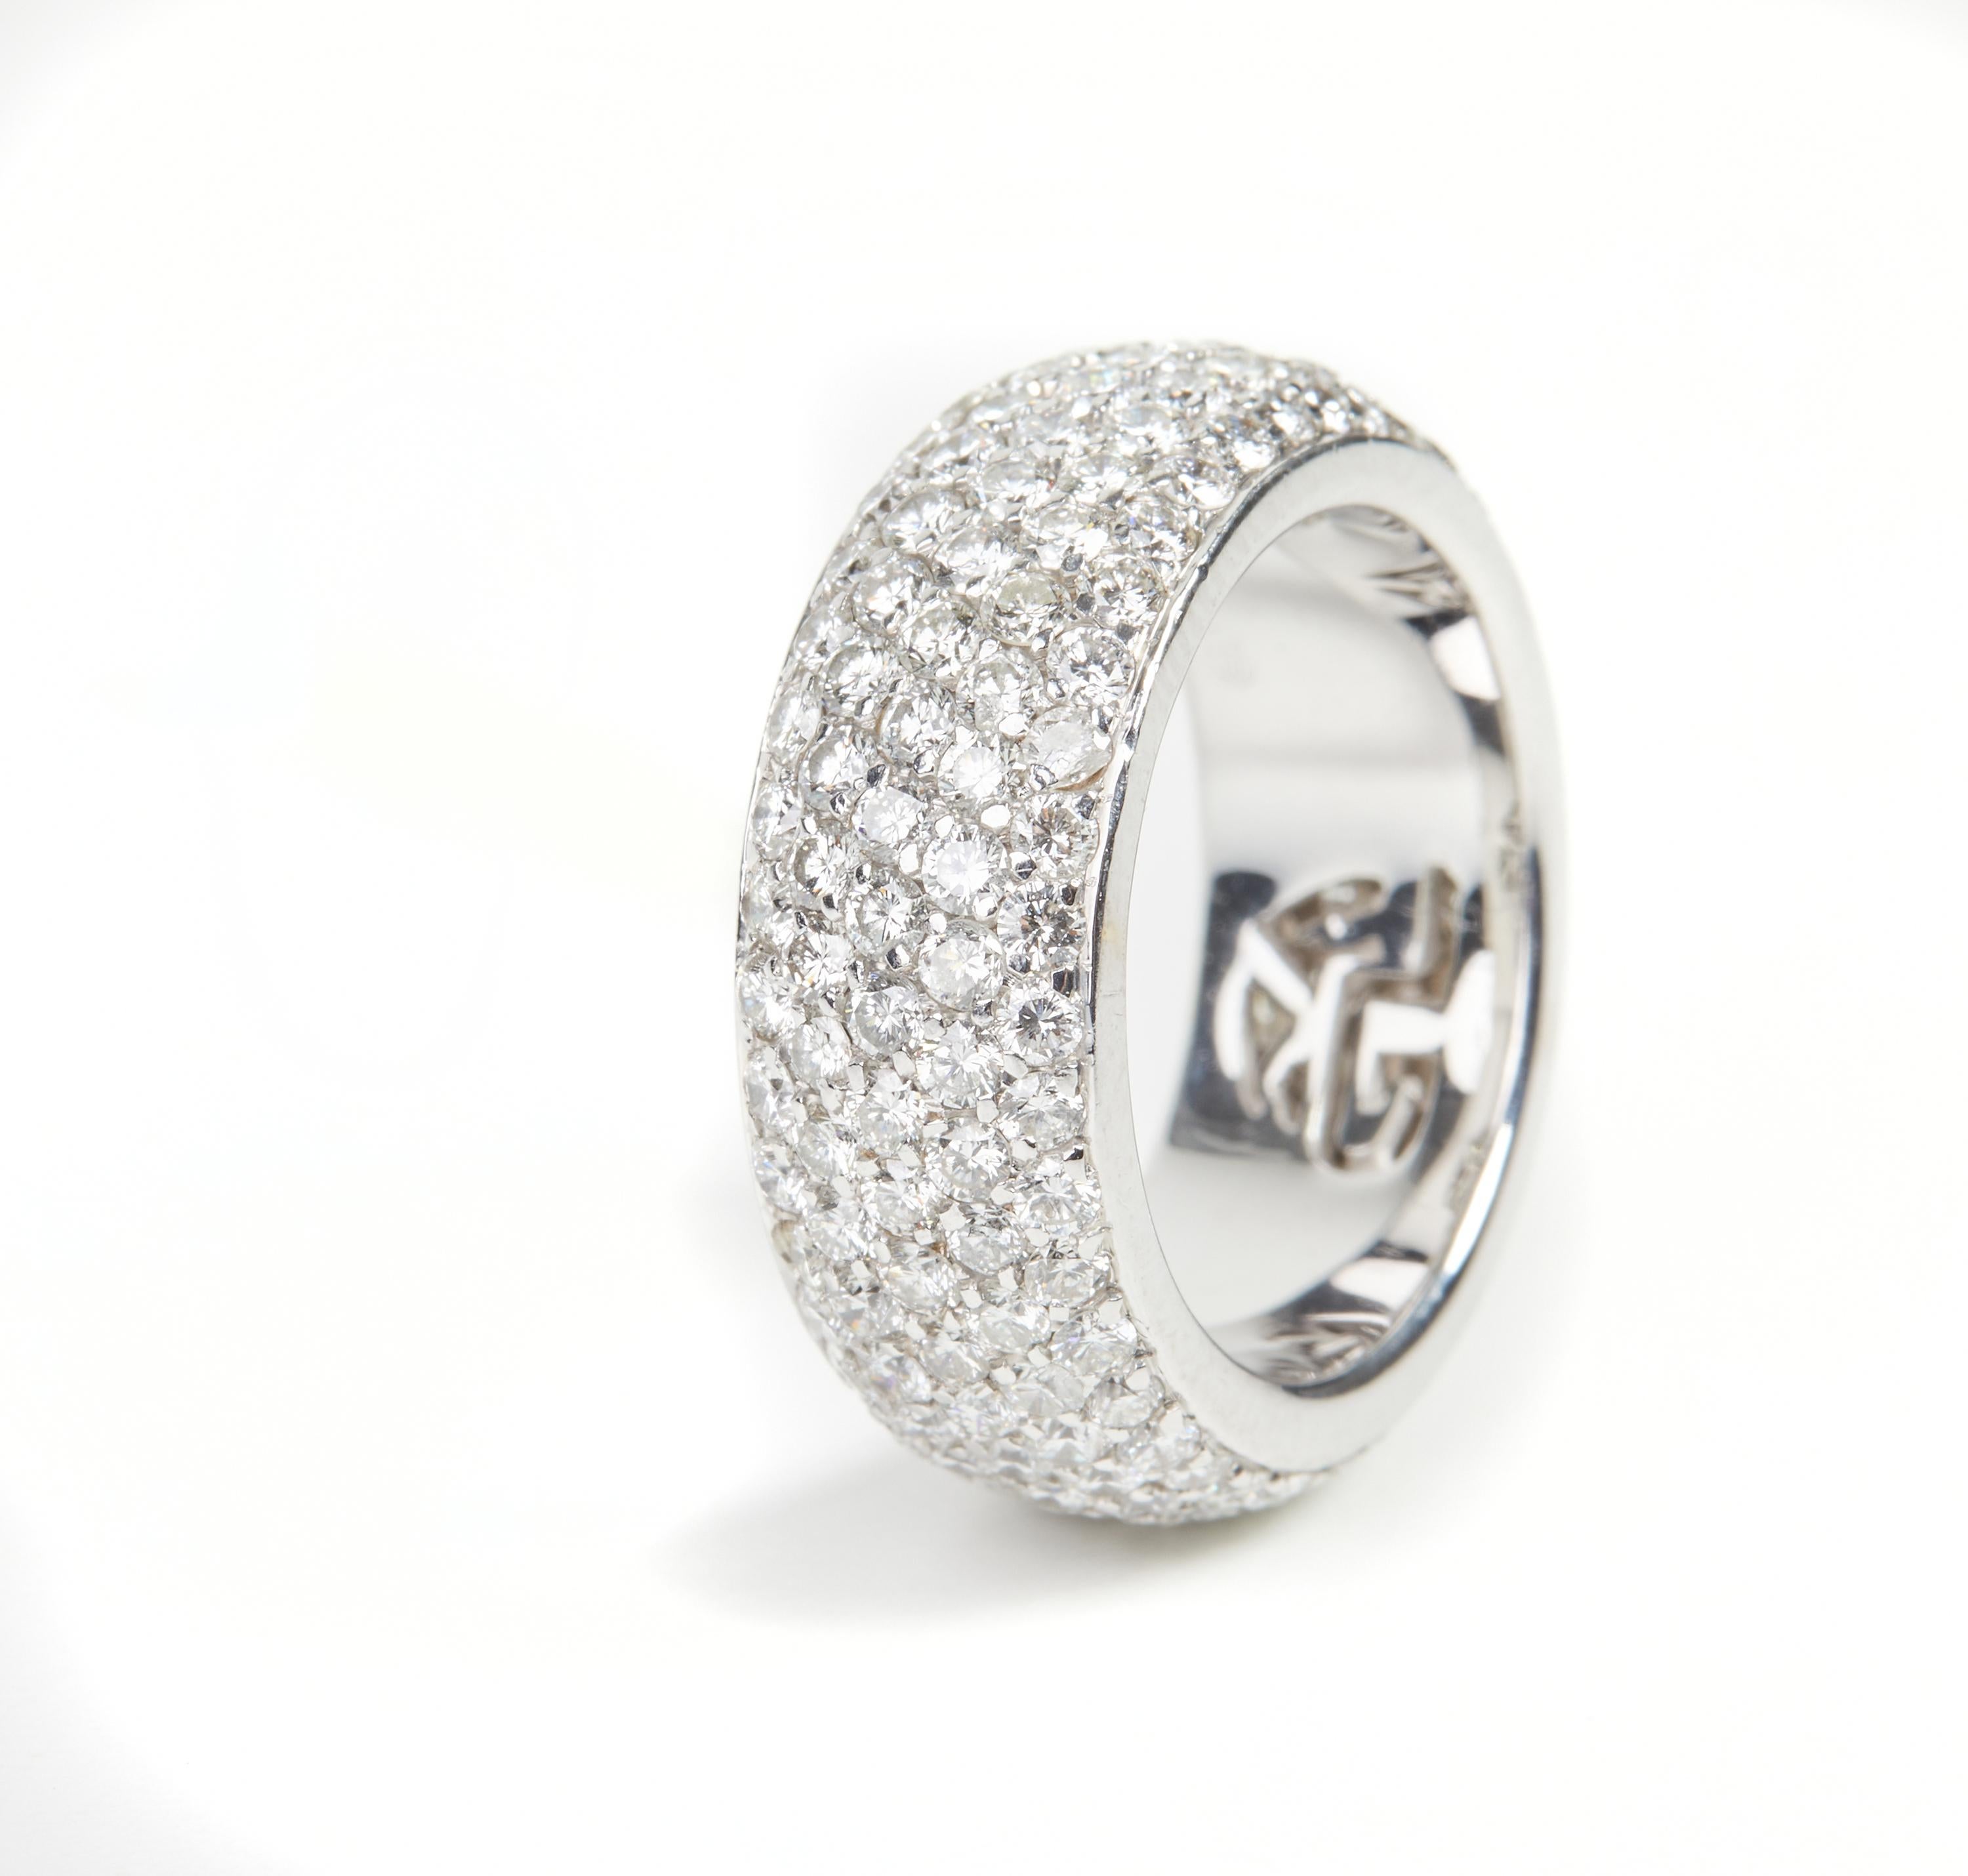 18 Karat Weißgold Diamant  Ring

171 Durchm. 3,22 ct



Größe EU 53 


Gianni Lazzaro wurde 1974 gegründet und ist ein Schmuckunternehmen in Familienbesitz mit Sitz in Düsseldorf, Deutschland.
Obwohl Gianni Lazzaro seine Wurzeln in Deutschland hat,